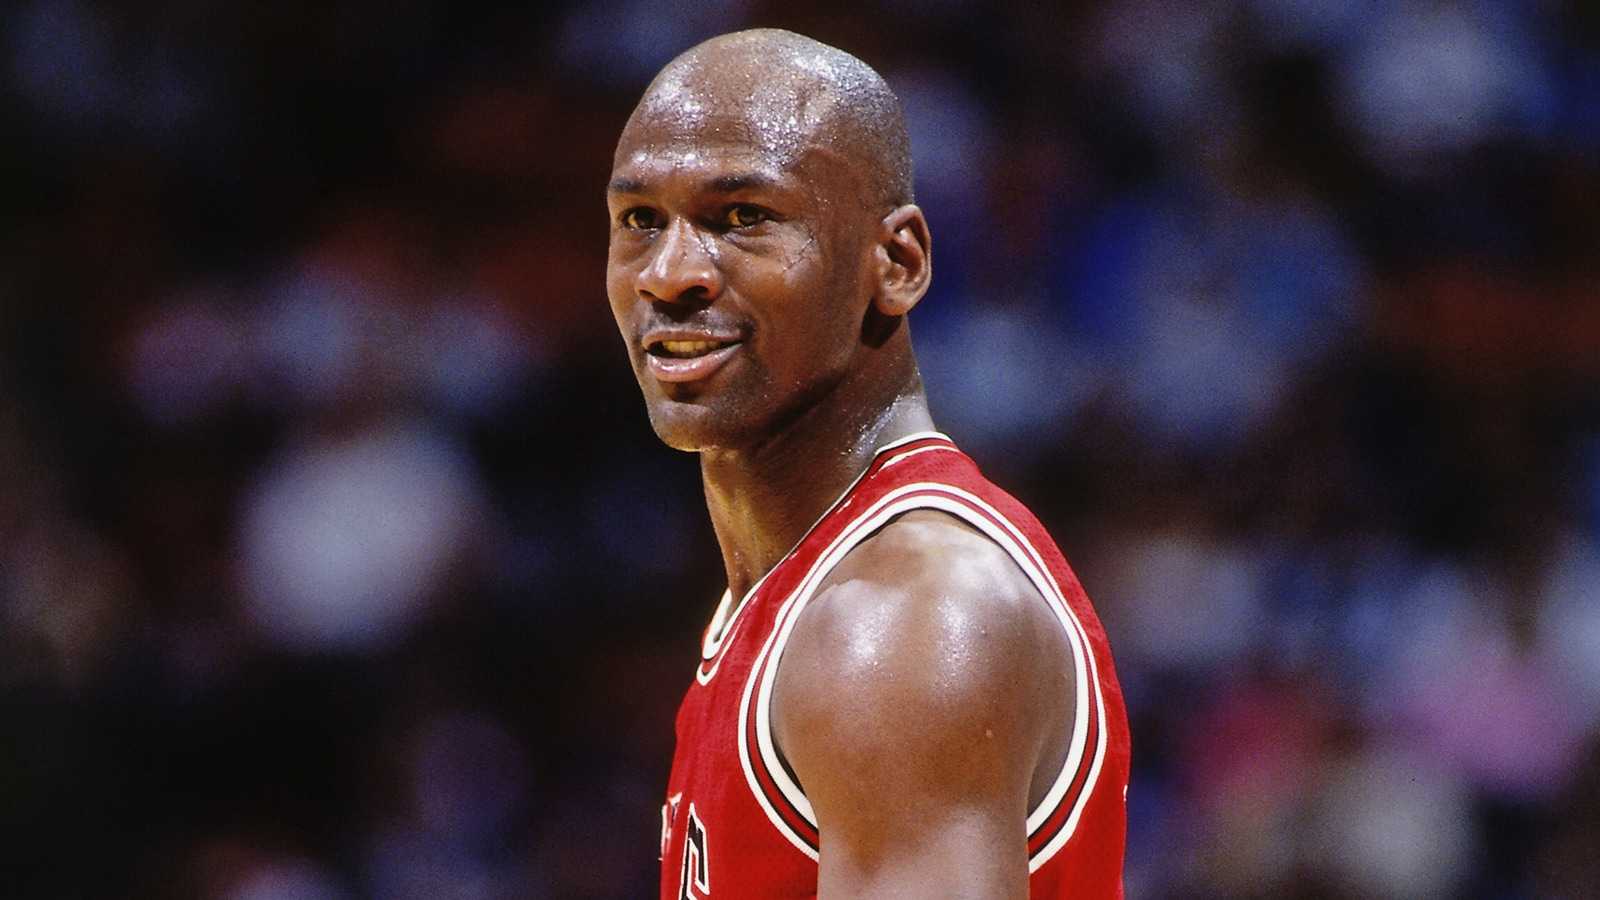 Ce jour-là: Michael Jordan a signé un accord qui a changé la NBA pour toujours